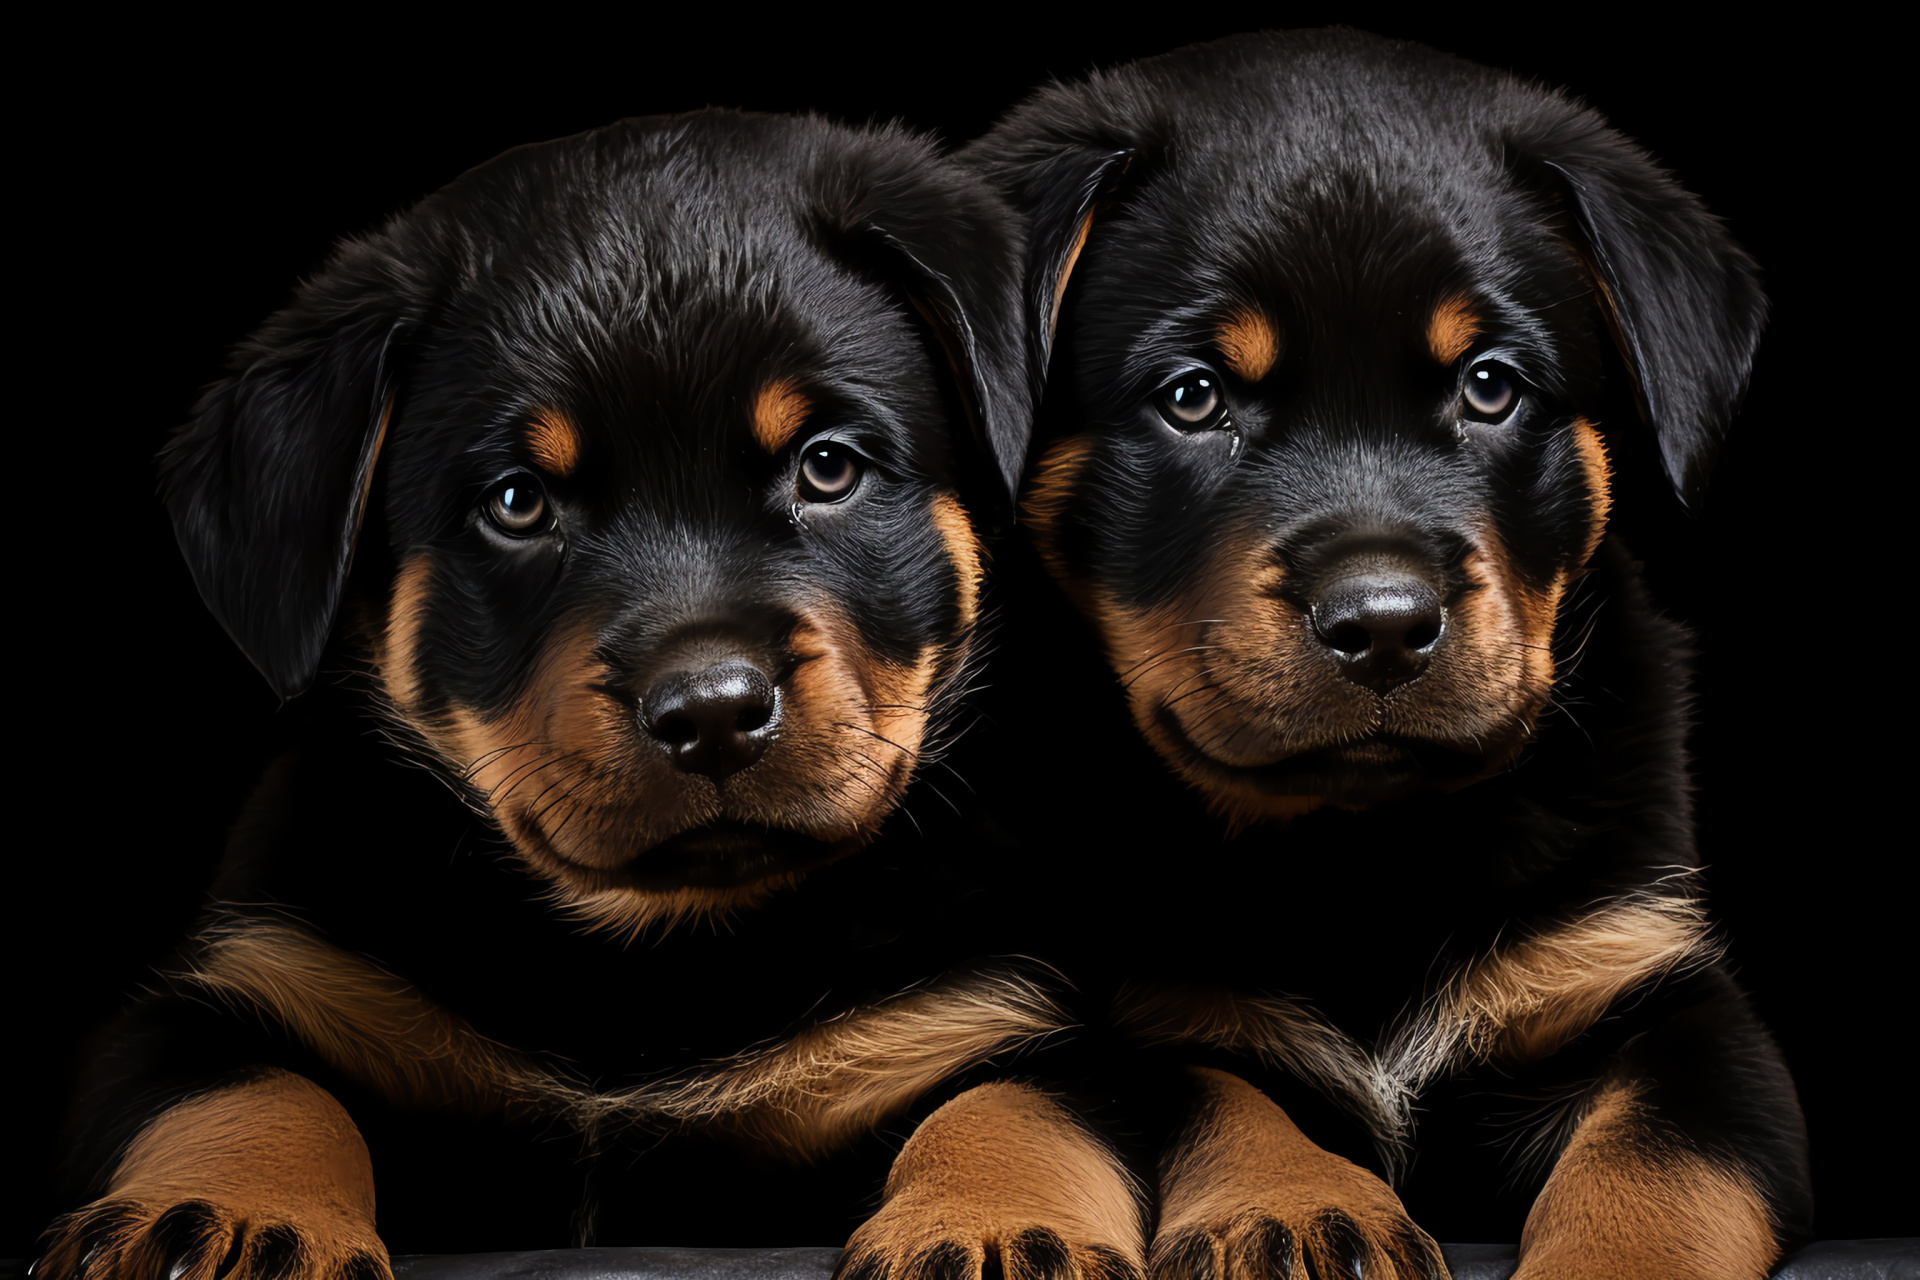 Alert puppies, Rottweiler siblings, Watchful eyes, Lustrous coats, Homogenous environment, HD Desktop Image